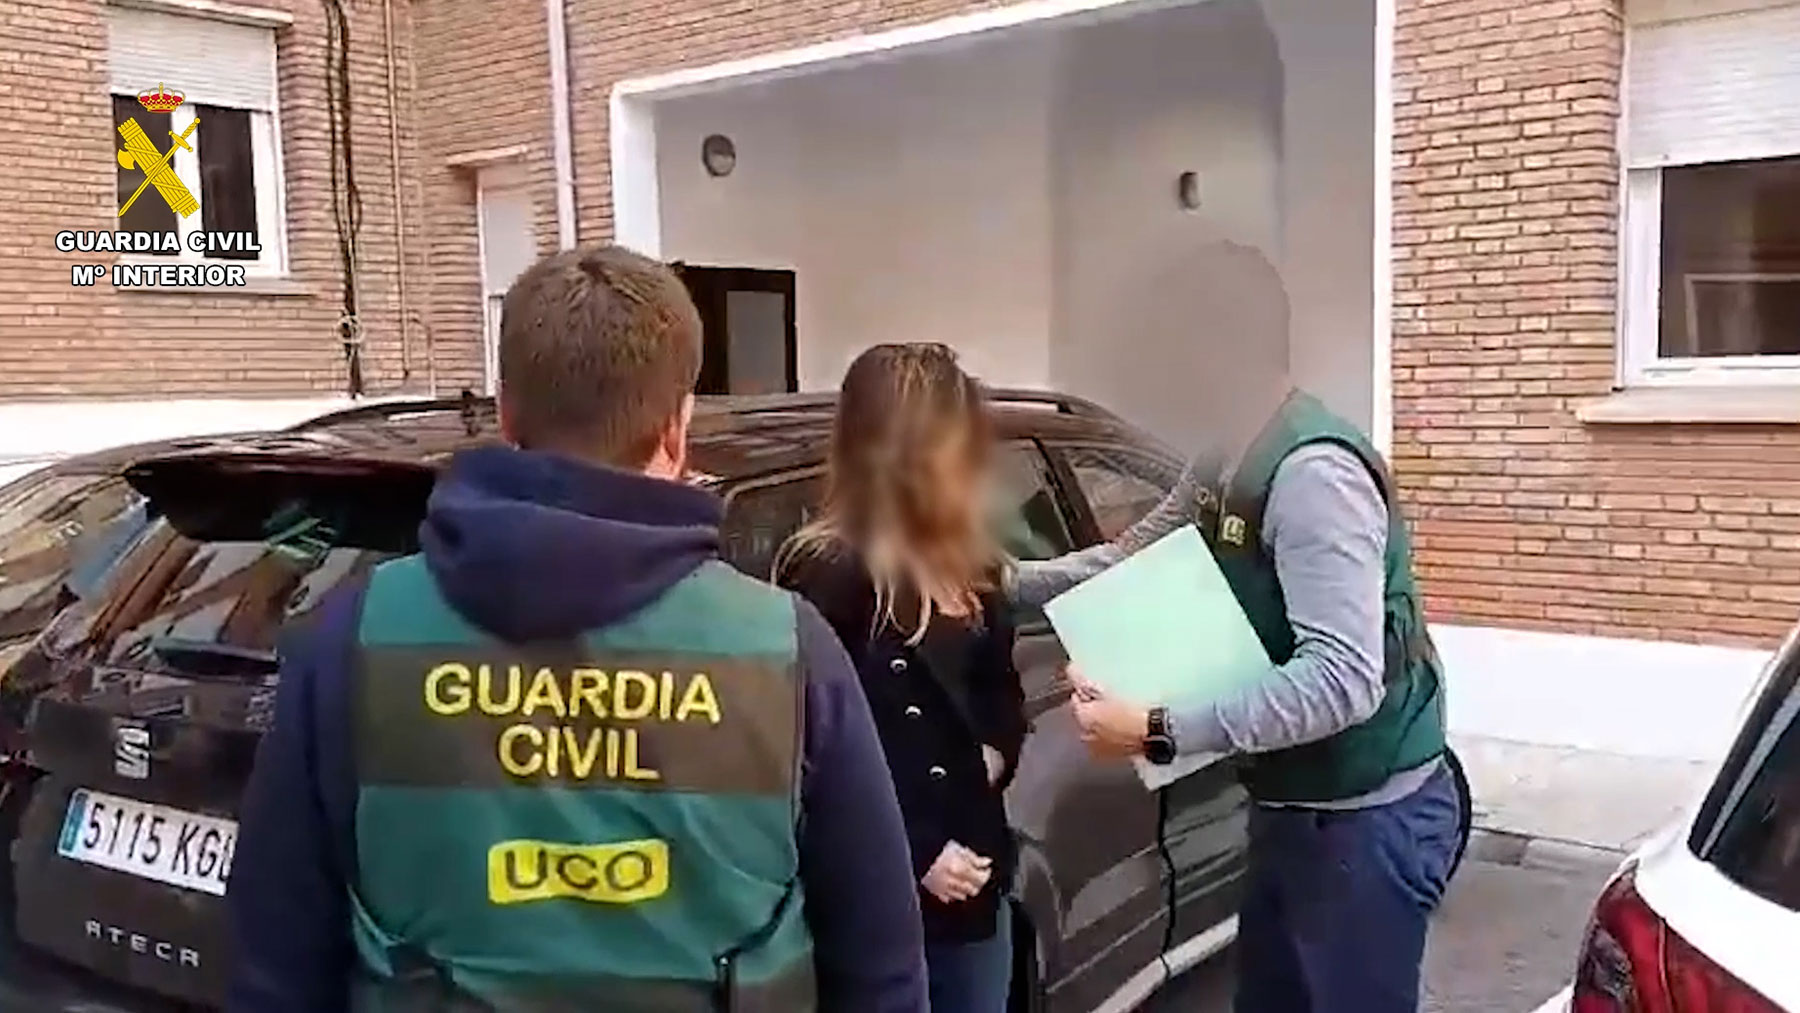 Momento de la detención de la mujer este martes en Marbella, por guardias de la UCO.